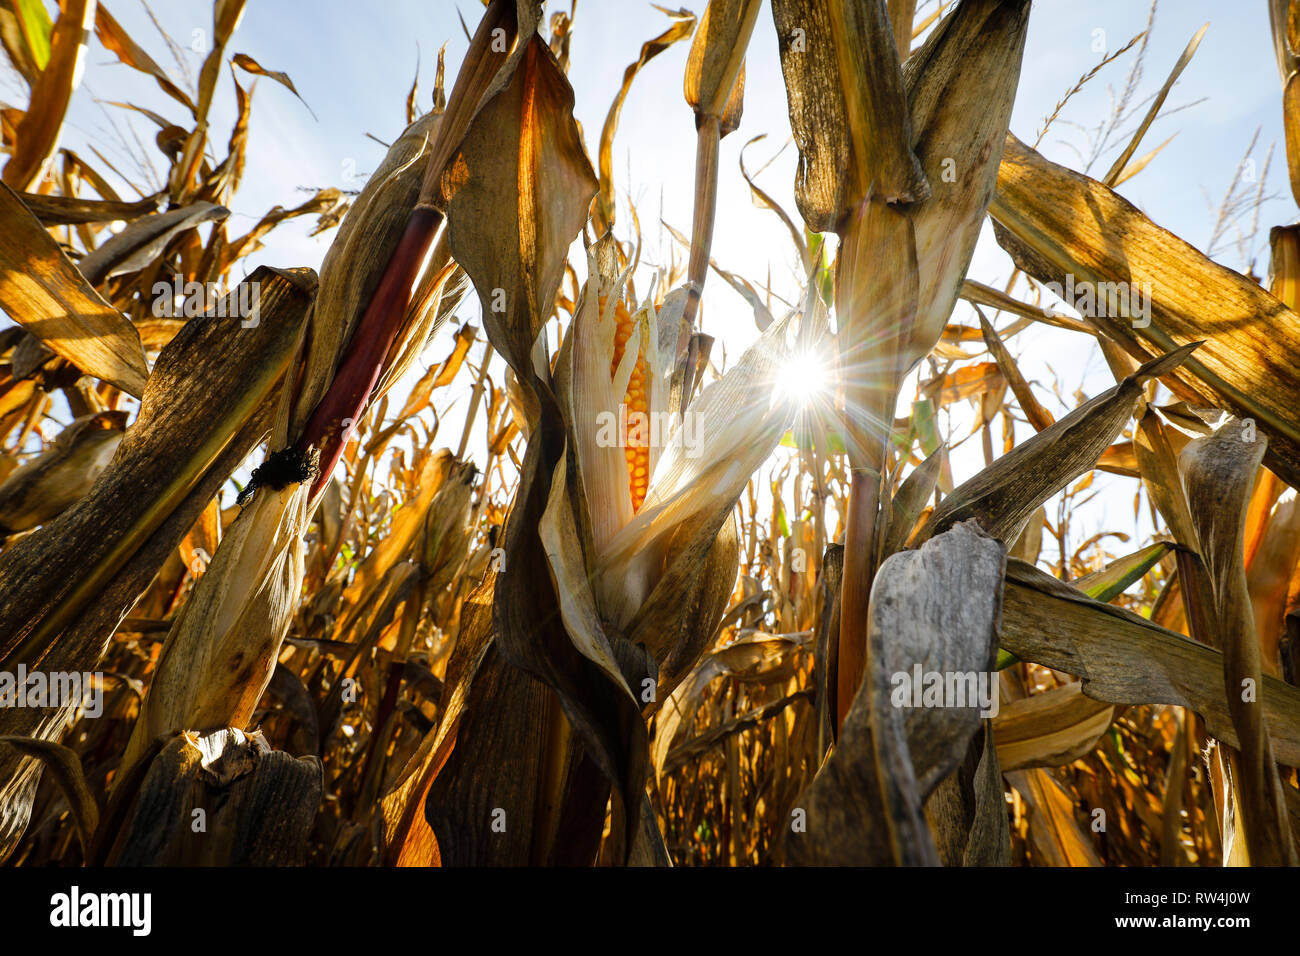 Datteln, Rhénanie du Nord-Westphalie, Allemagne - Les champs de maïs dans la chaleur de l'été. Datteln, Nordrhein-Westfalen, Deutschland - ausgetrocknetes Mai Banque D'Images